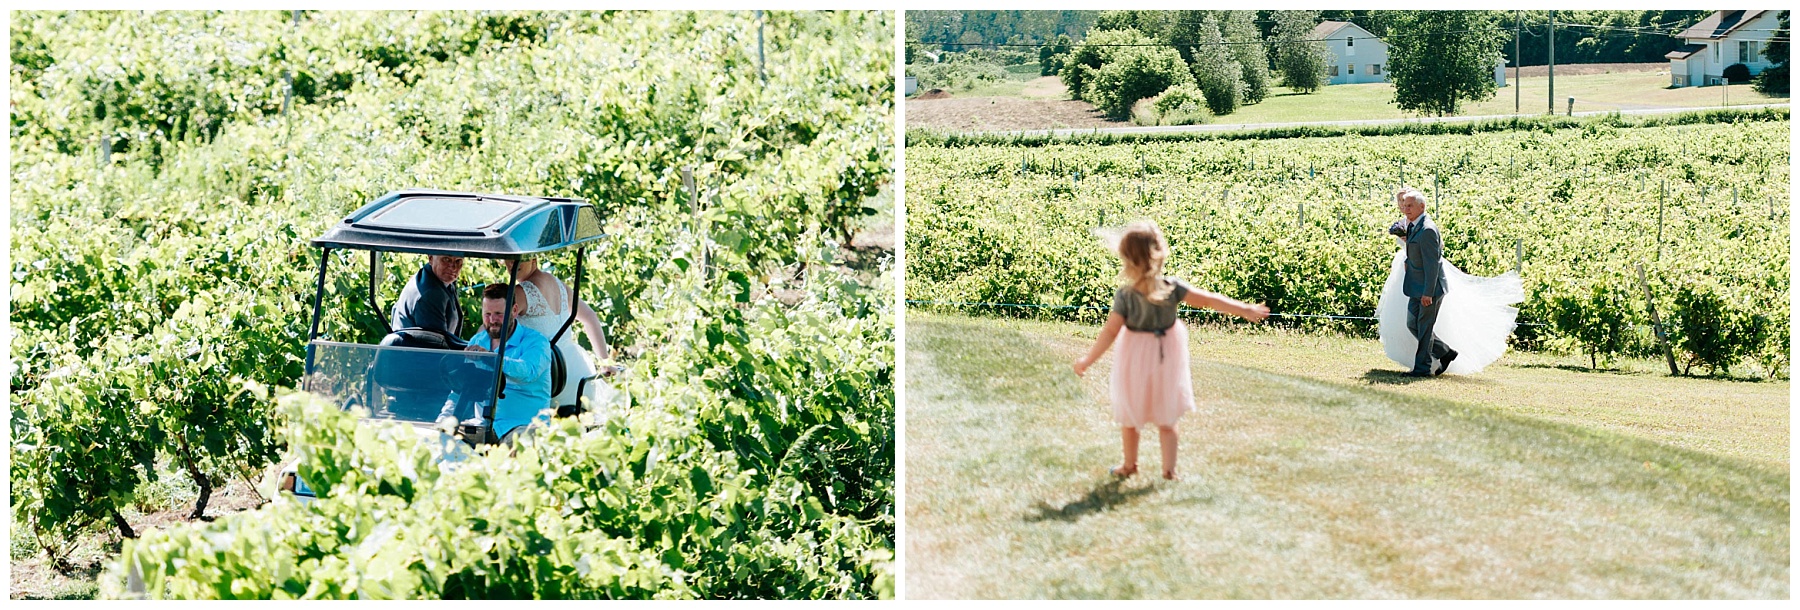 La mariée avance entre les vignes du vignoble avec son père à ses côtés.